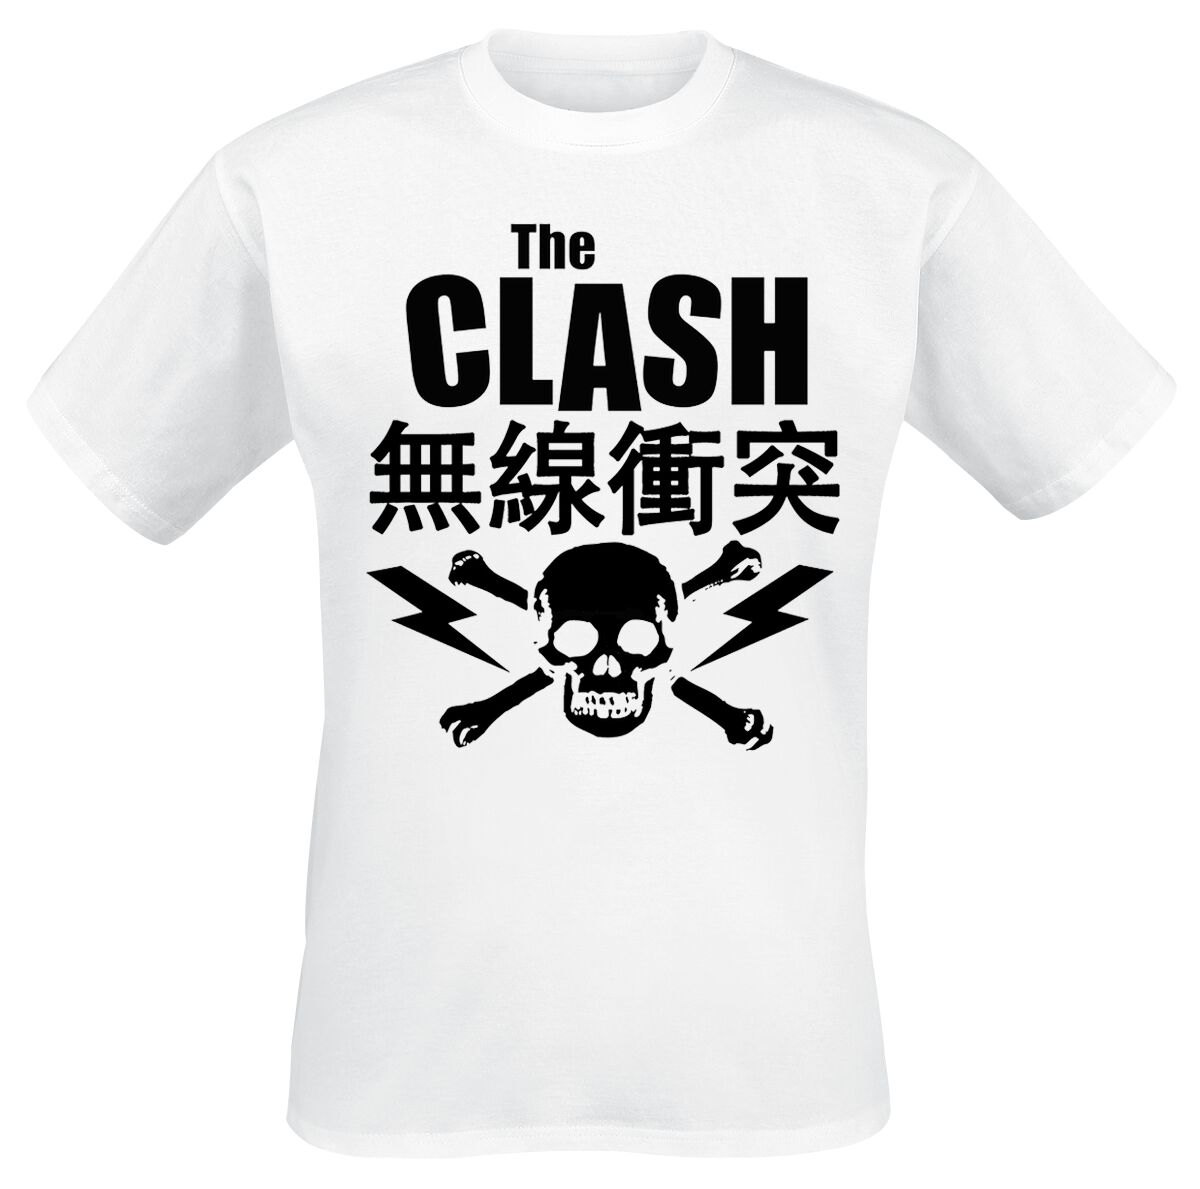 The Clash Skull Interpretation T-Shirt white